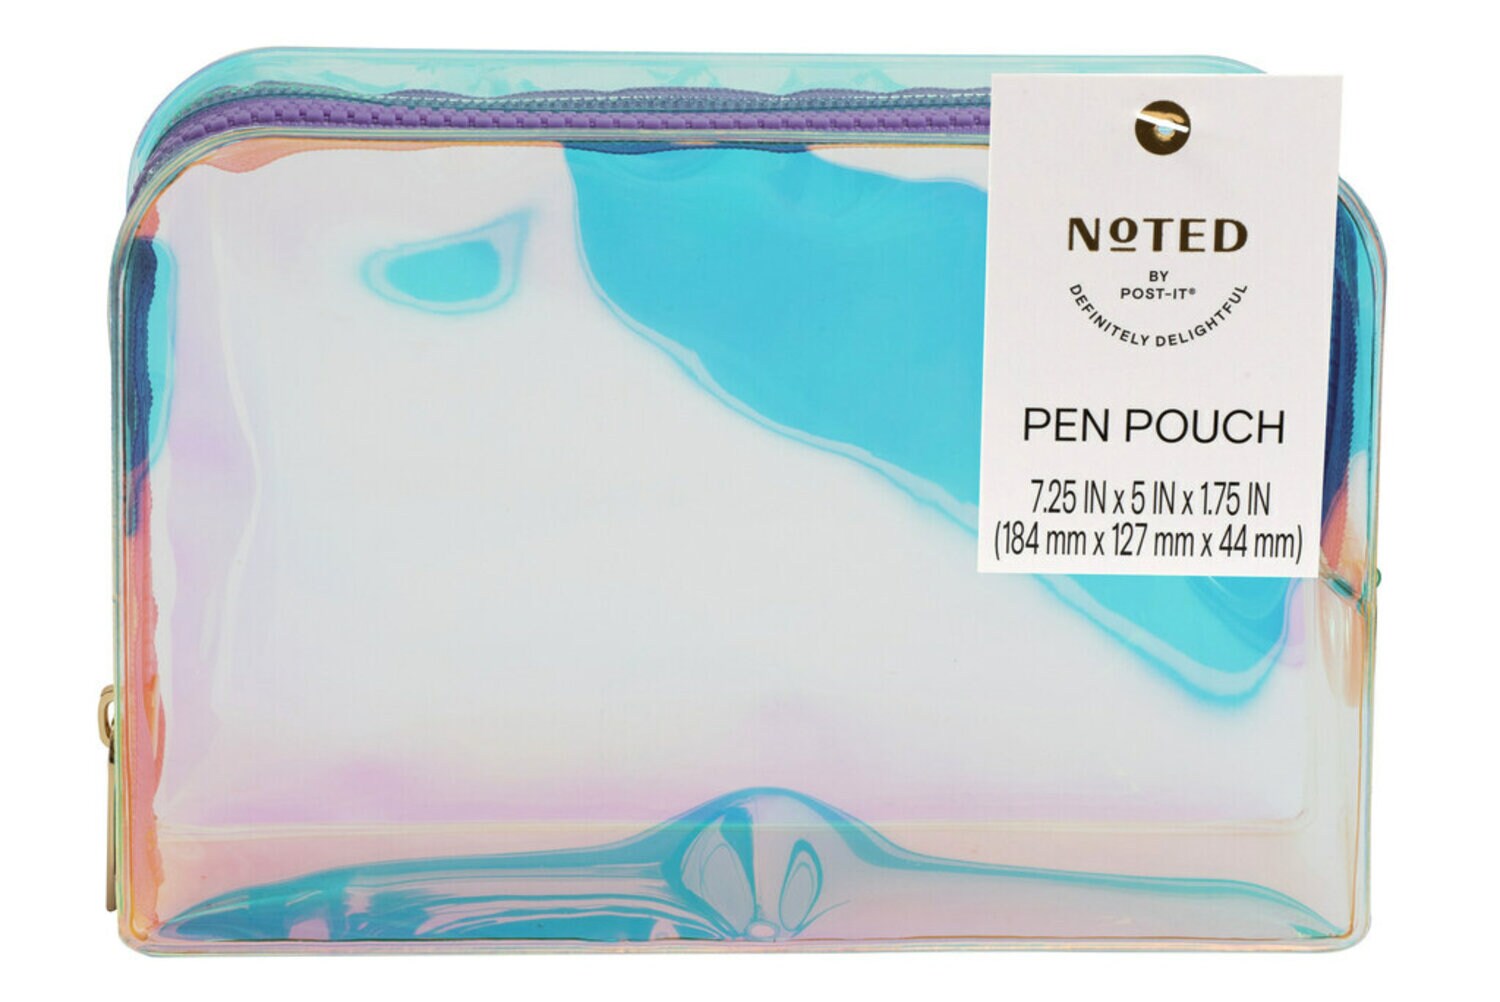 7100289090 - Post-it Pen Pouch NTD7-PP-1, One Pen Pouch